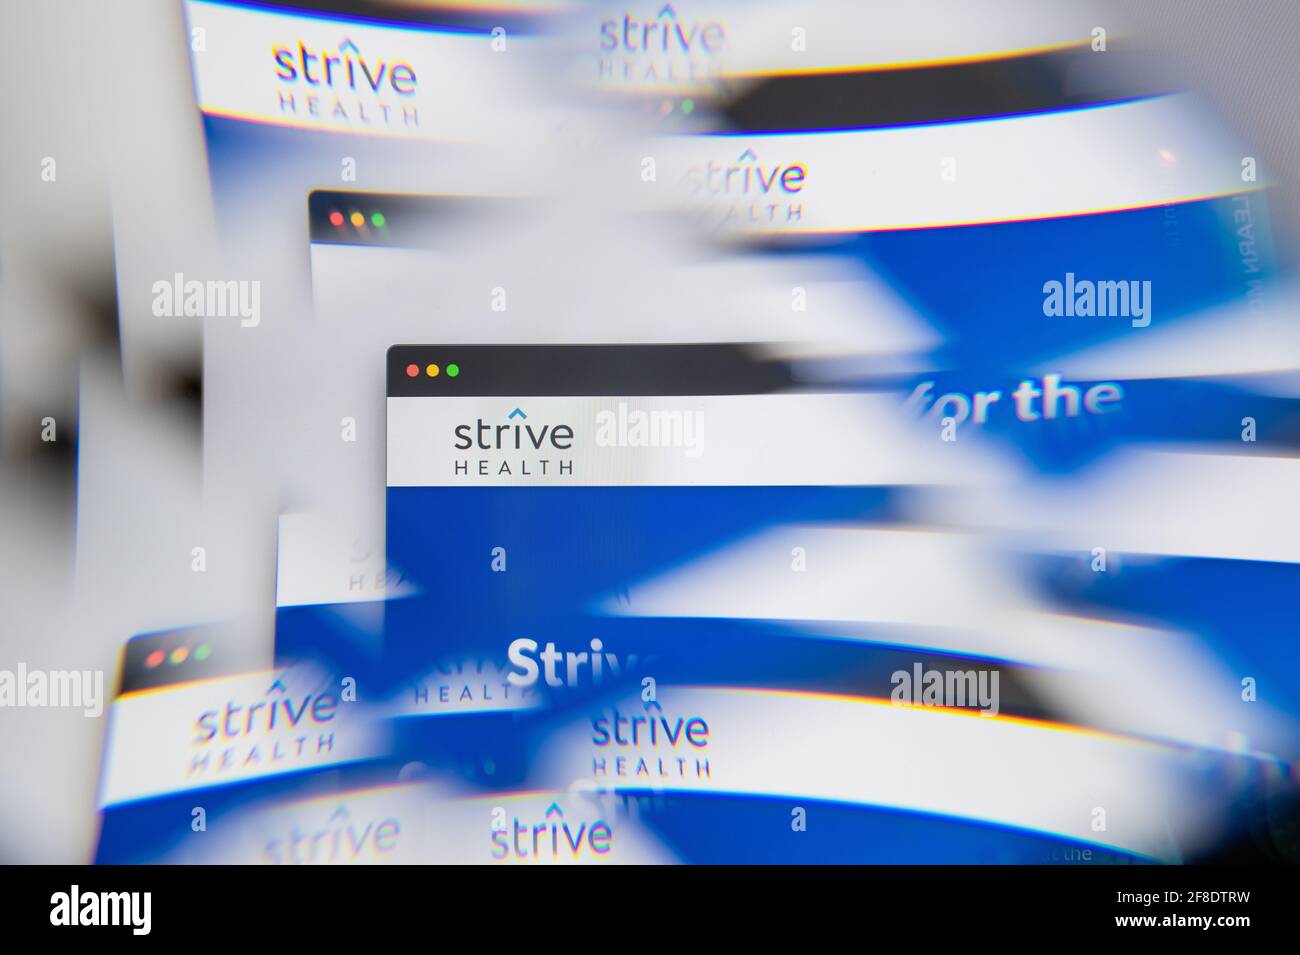 Mailand, Italien - 10. APRIL 2021: Strive Health-Logo auf dem Laptop-Bildschirm durch ein optisches Prisma gesehen. Illustratives redaktionelles Bild von Strive Health Webs Stockfoto